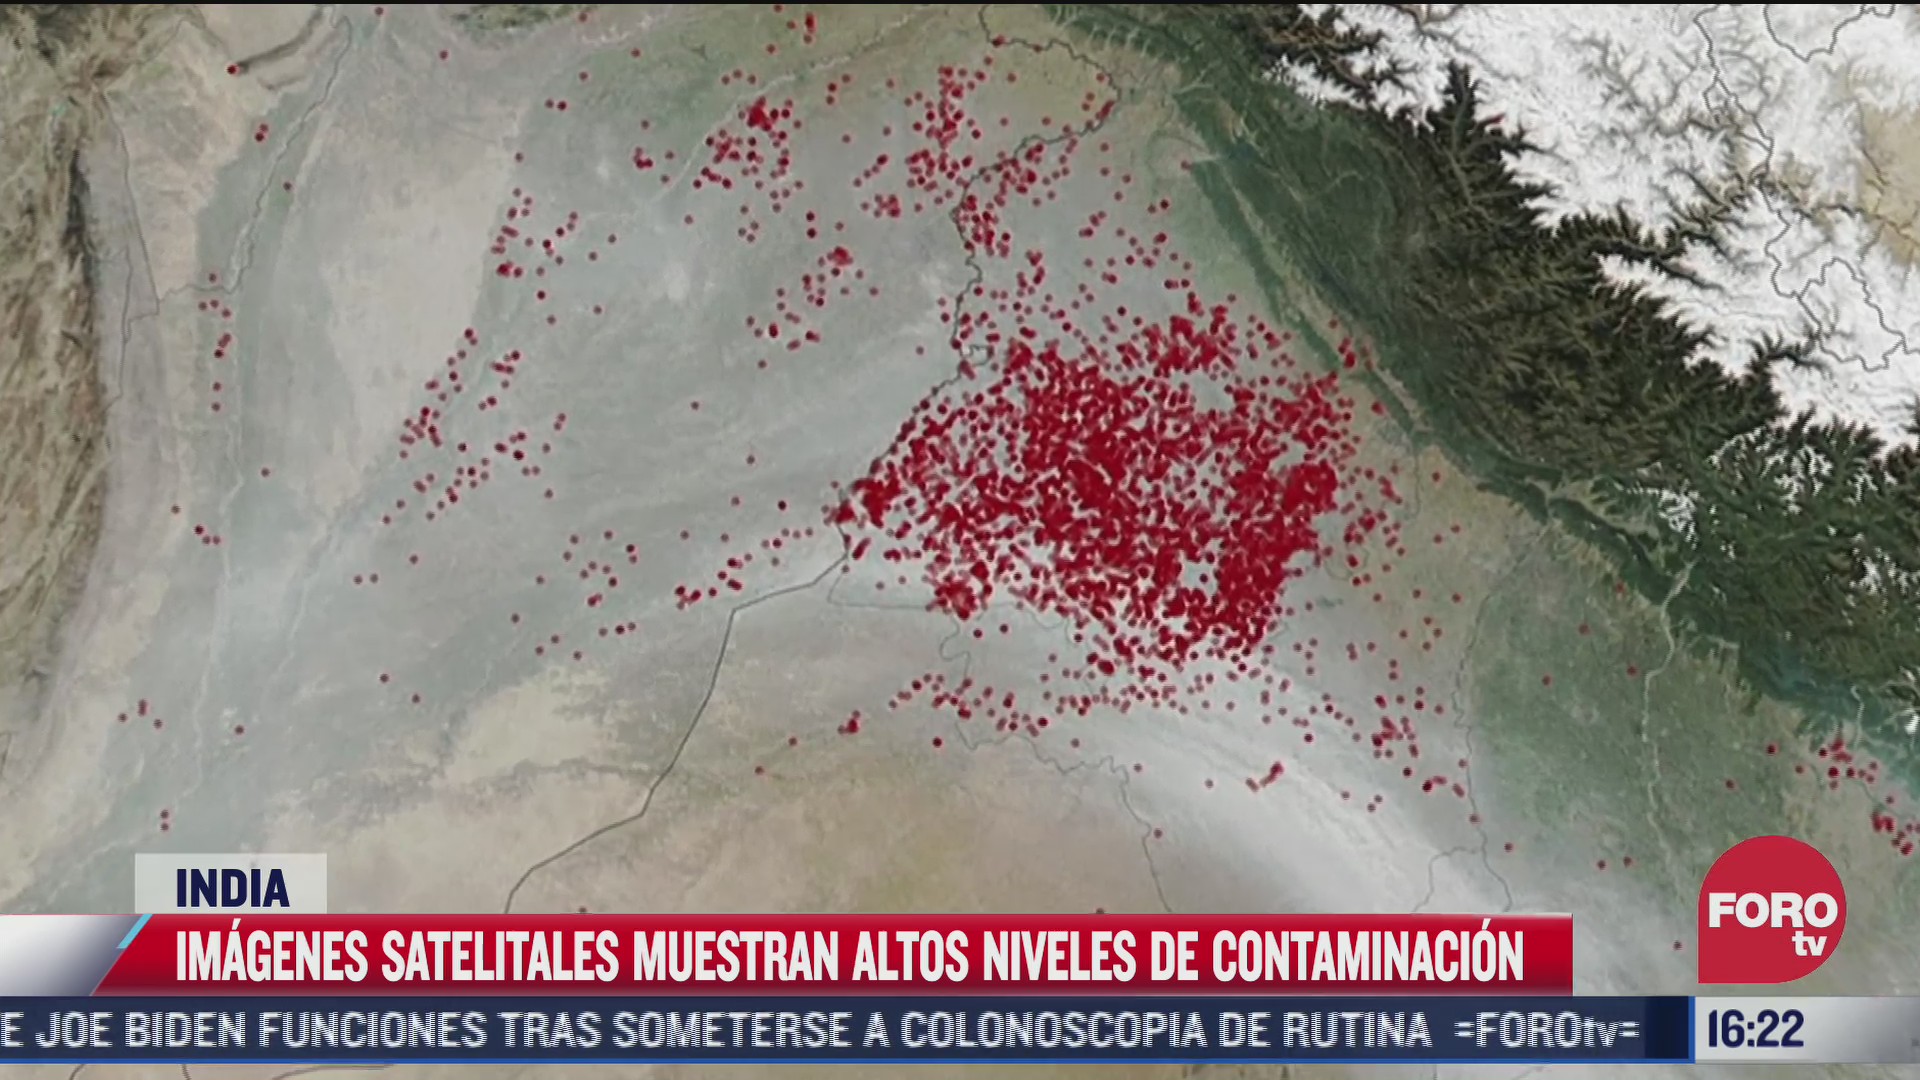 asi se ve la alarmante contaminacion en nueva delhi vista desde satelites de la nasa